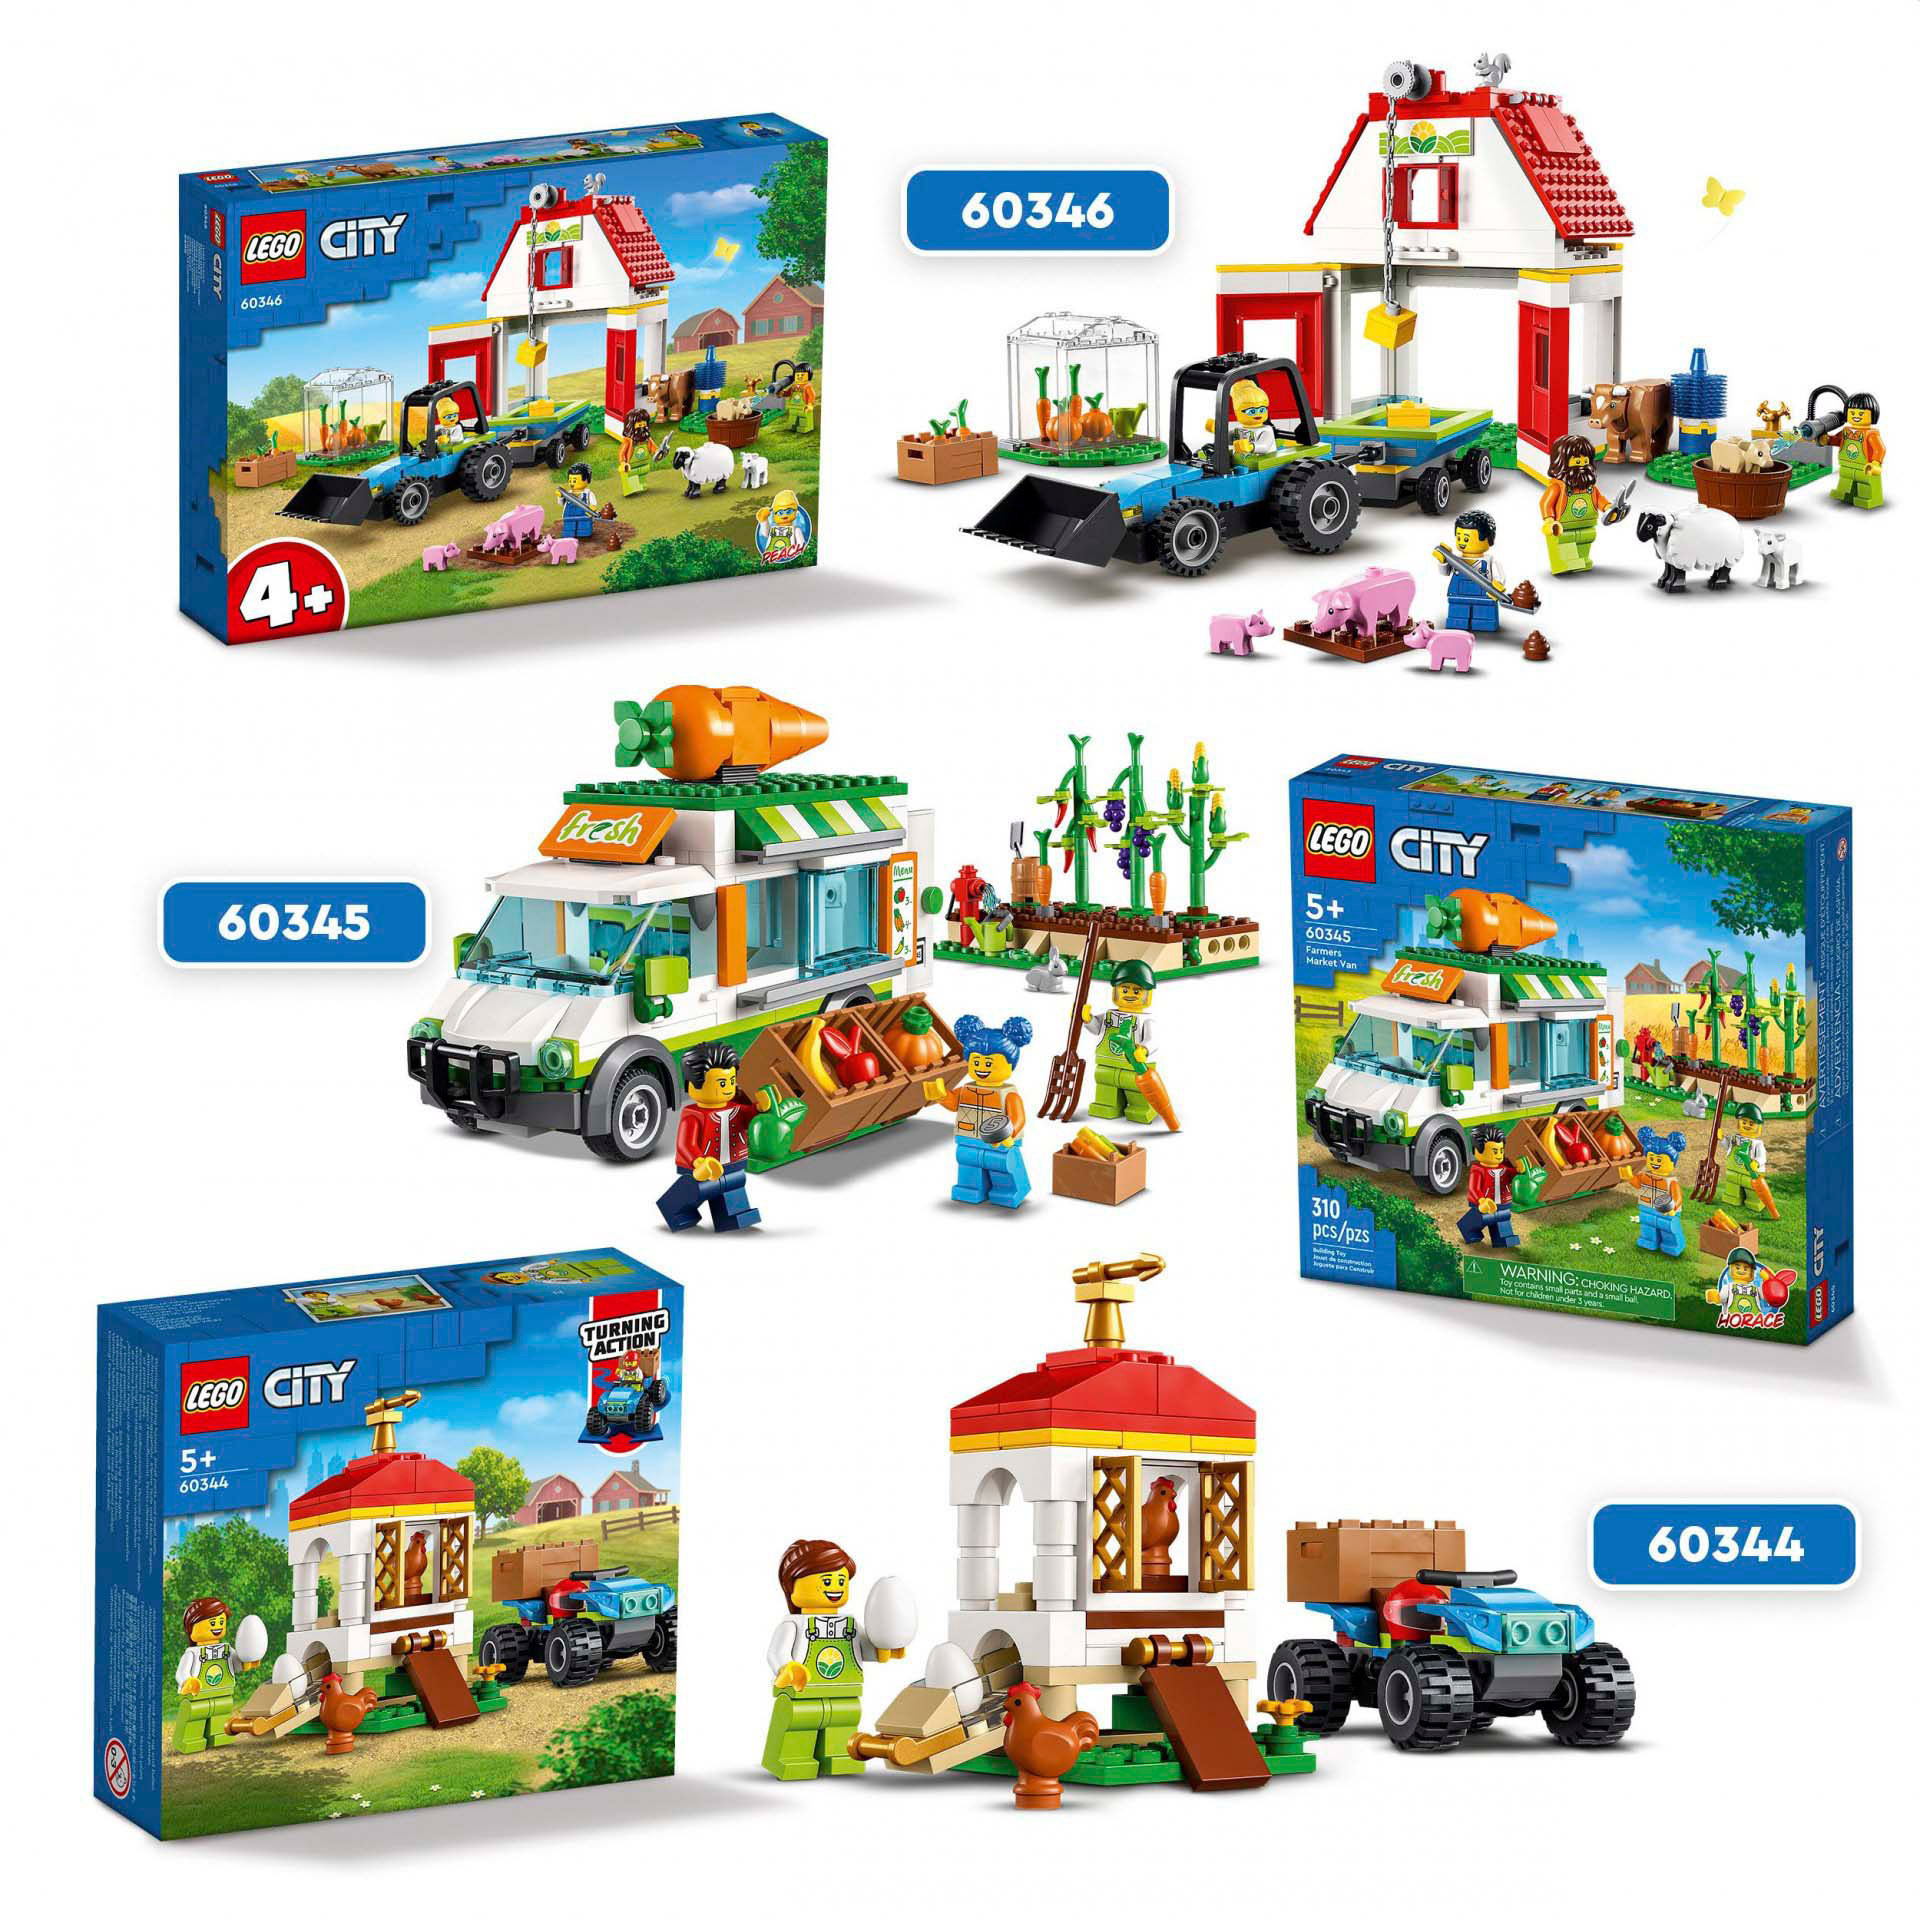 LEGO City Il Pollaio, Set con Animali, Nido per Galline e Uova Fresche, Fuoristr 60344, , large